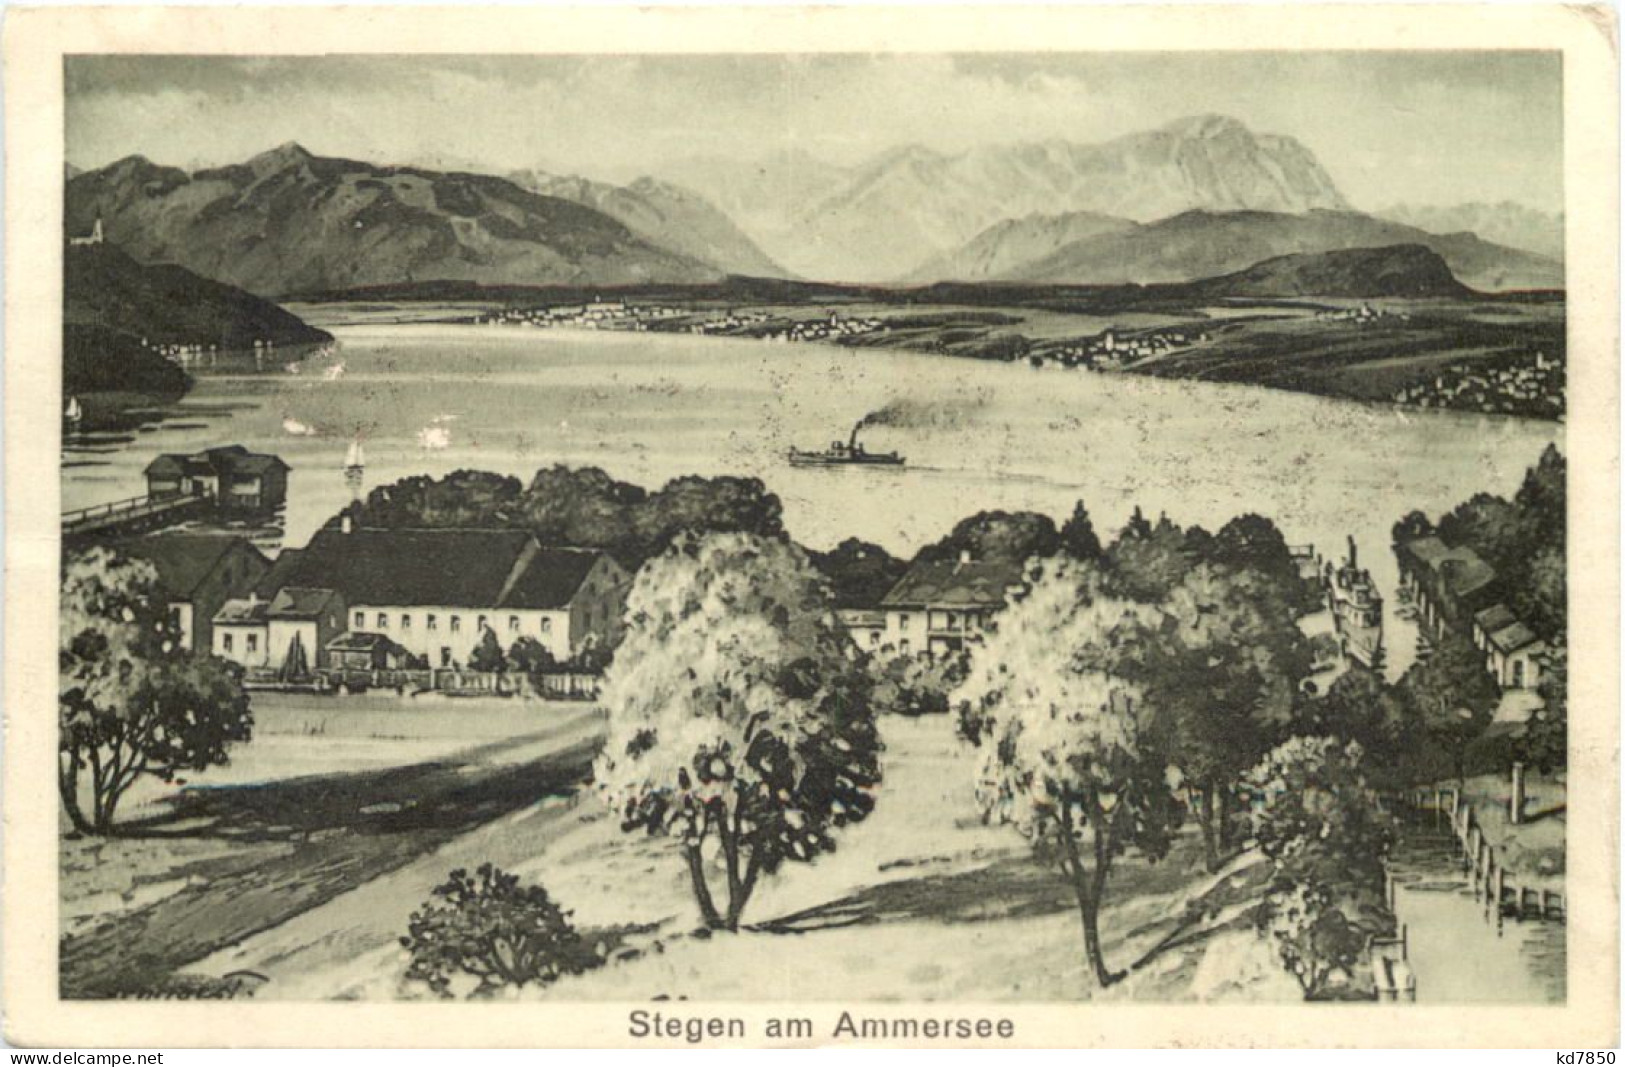 Am Ammersee, Stegen, - Landsberg